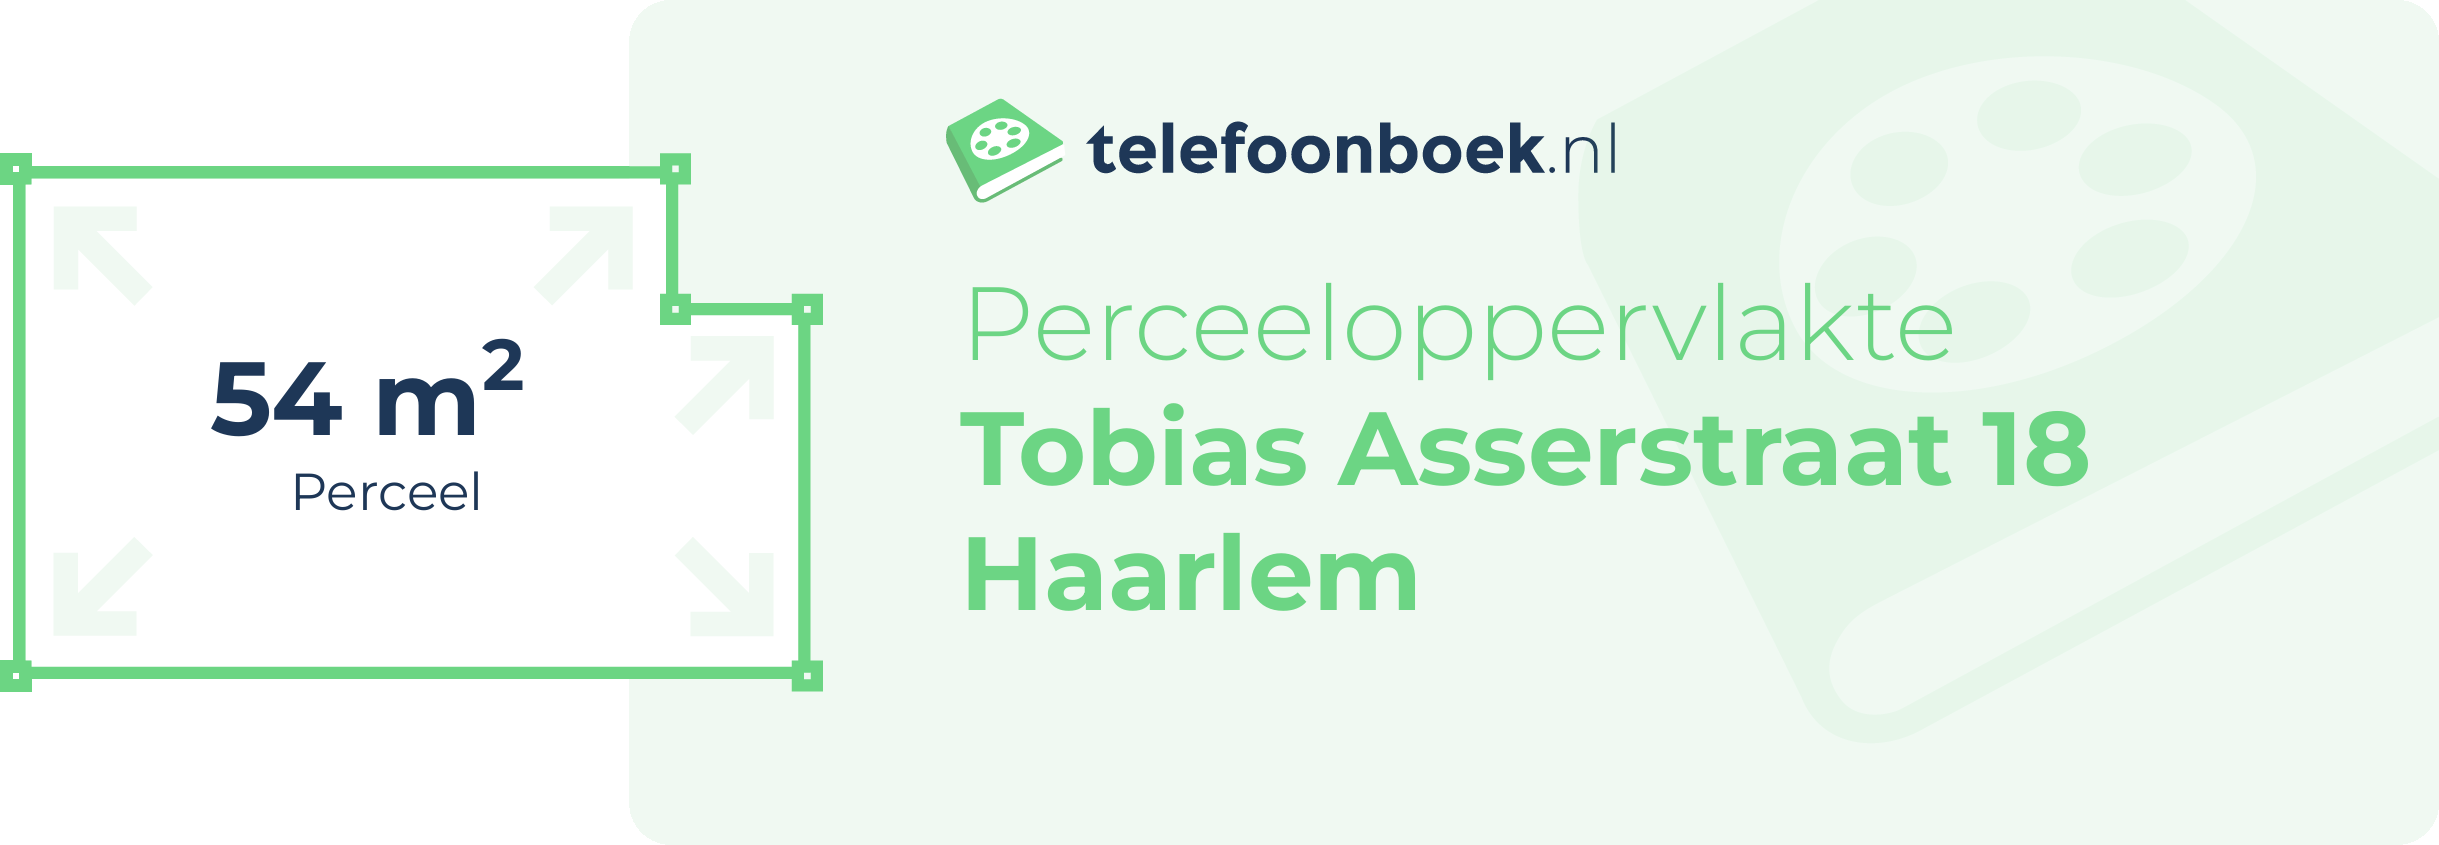 Perceeloppervlakte Tobias Asserstraat 18 Haarlem